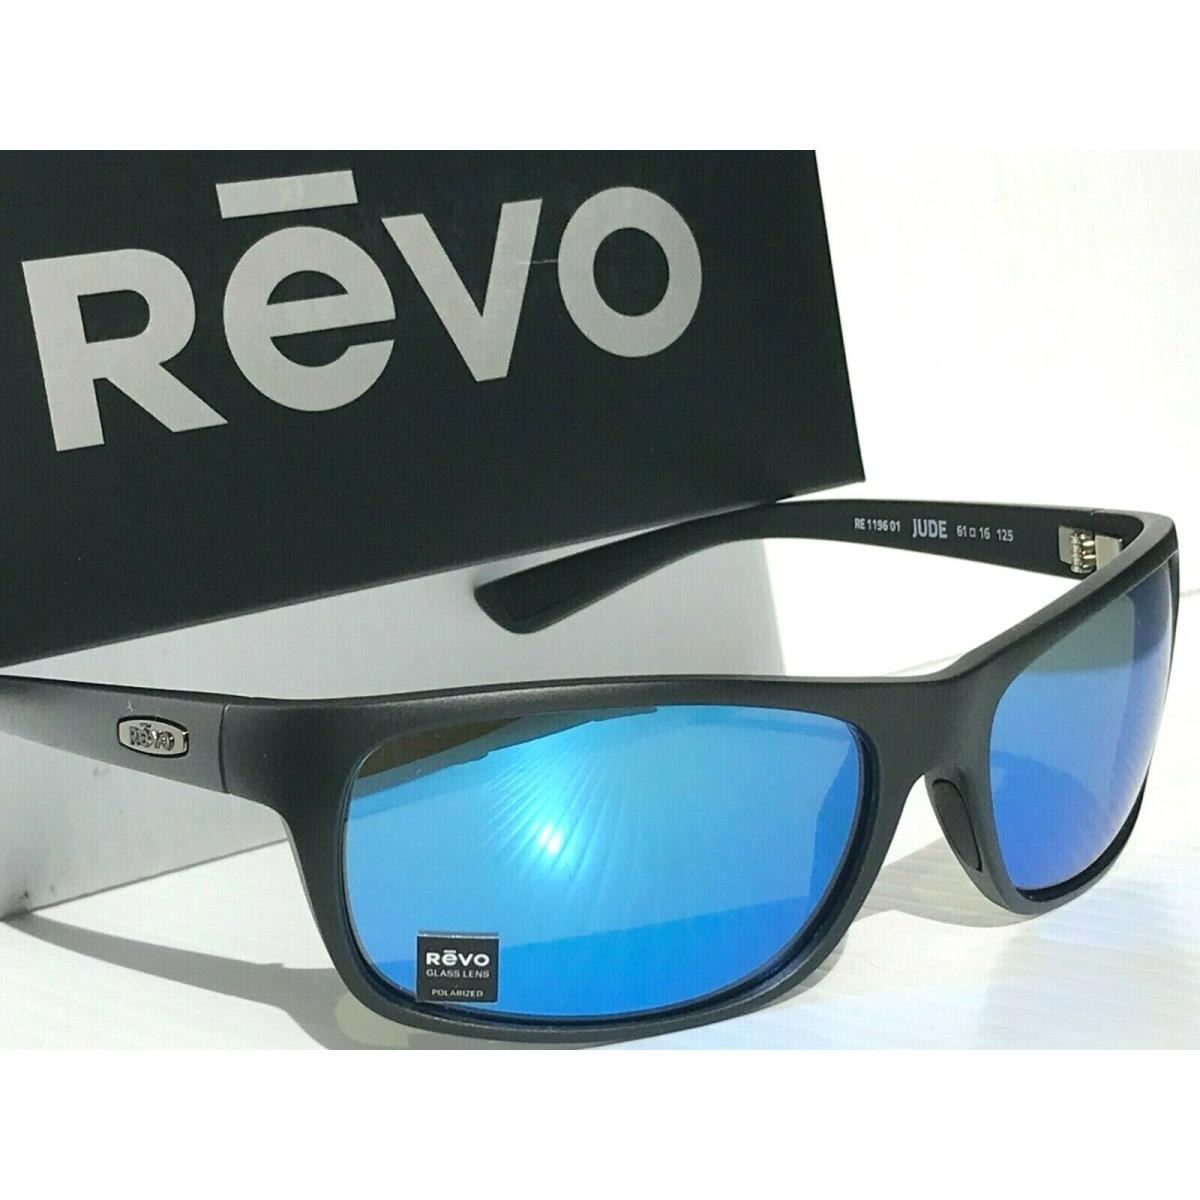 Revo sunglasses JUDE - Black Frame, Blue Lens